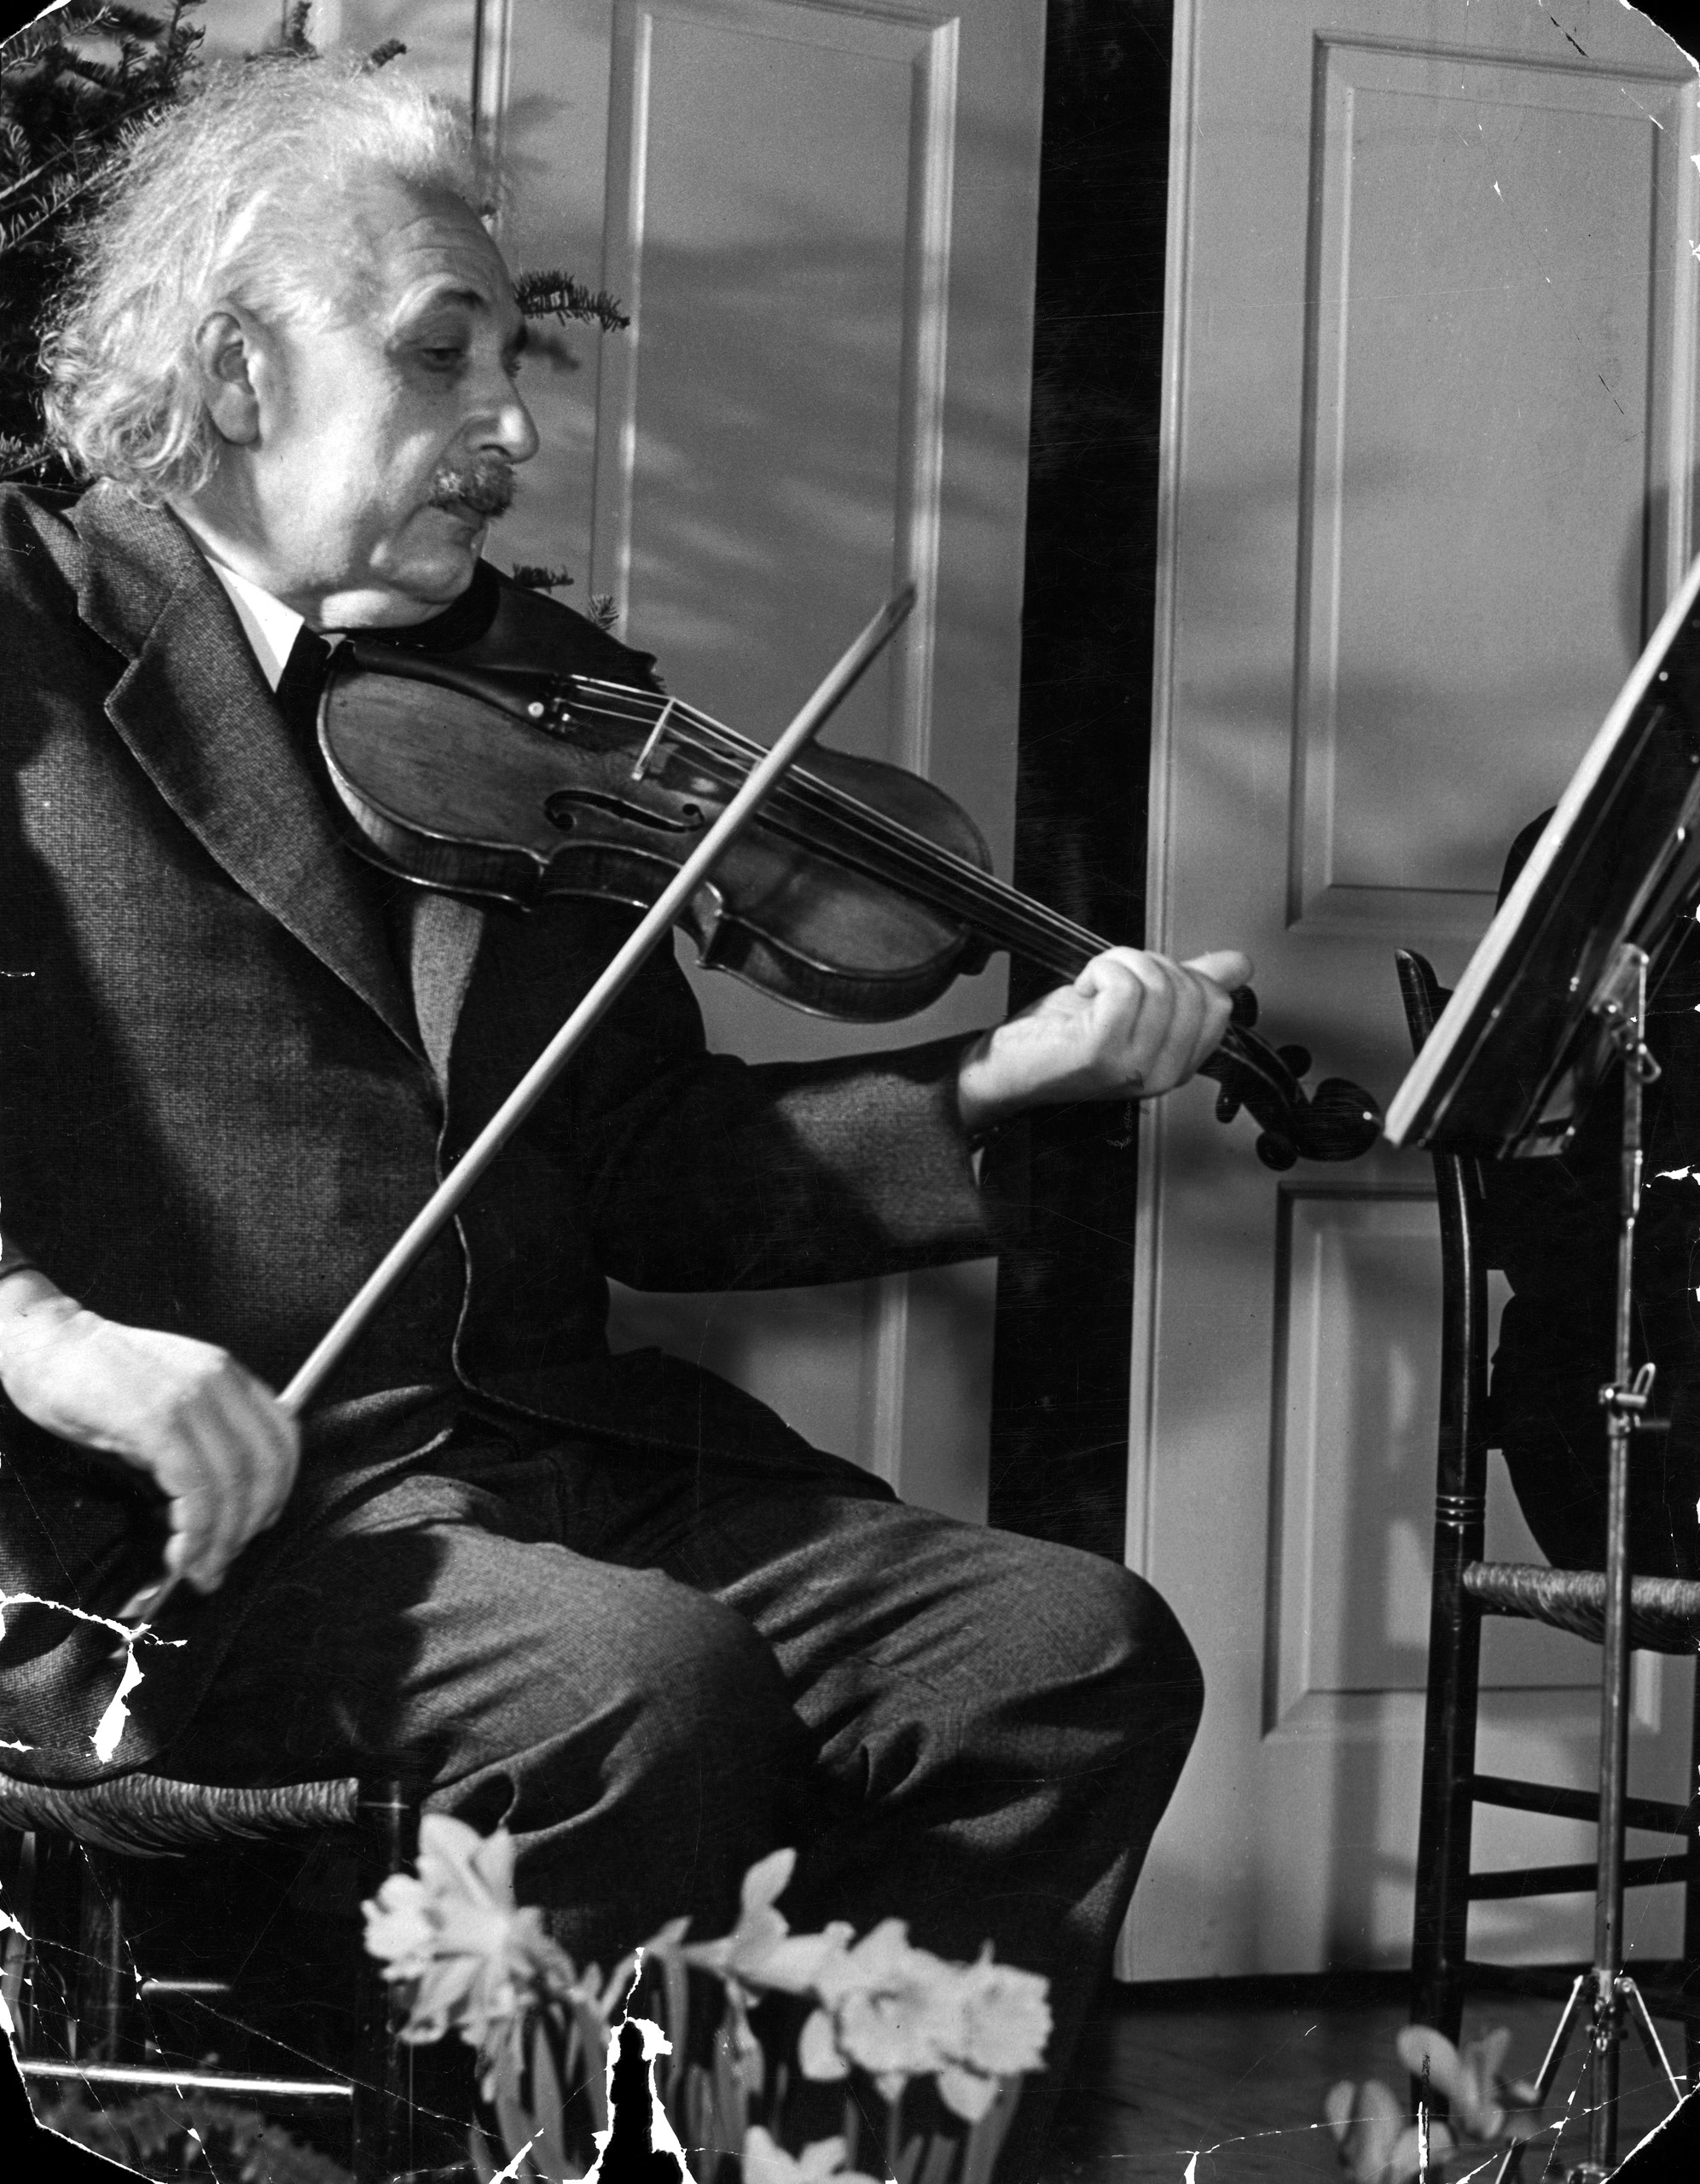 Physicist Dr. Albert Einstein playing his beloved violin, 1941.